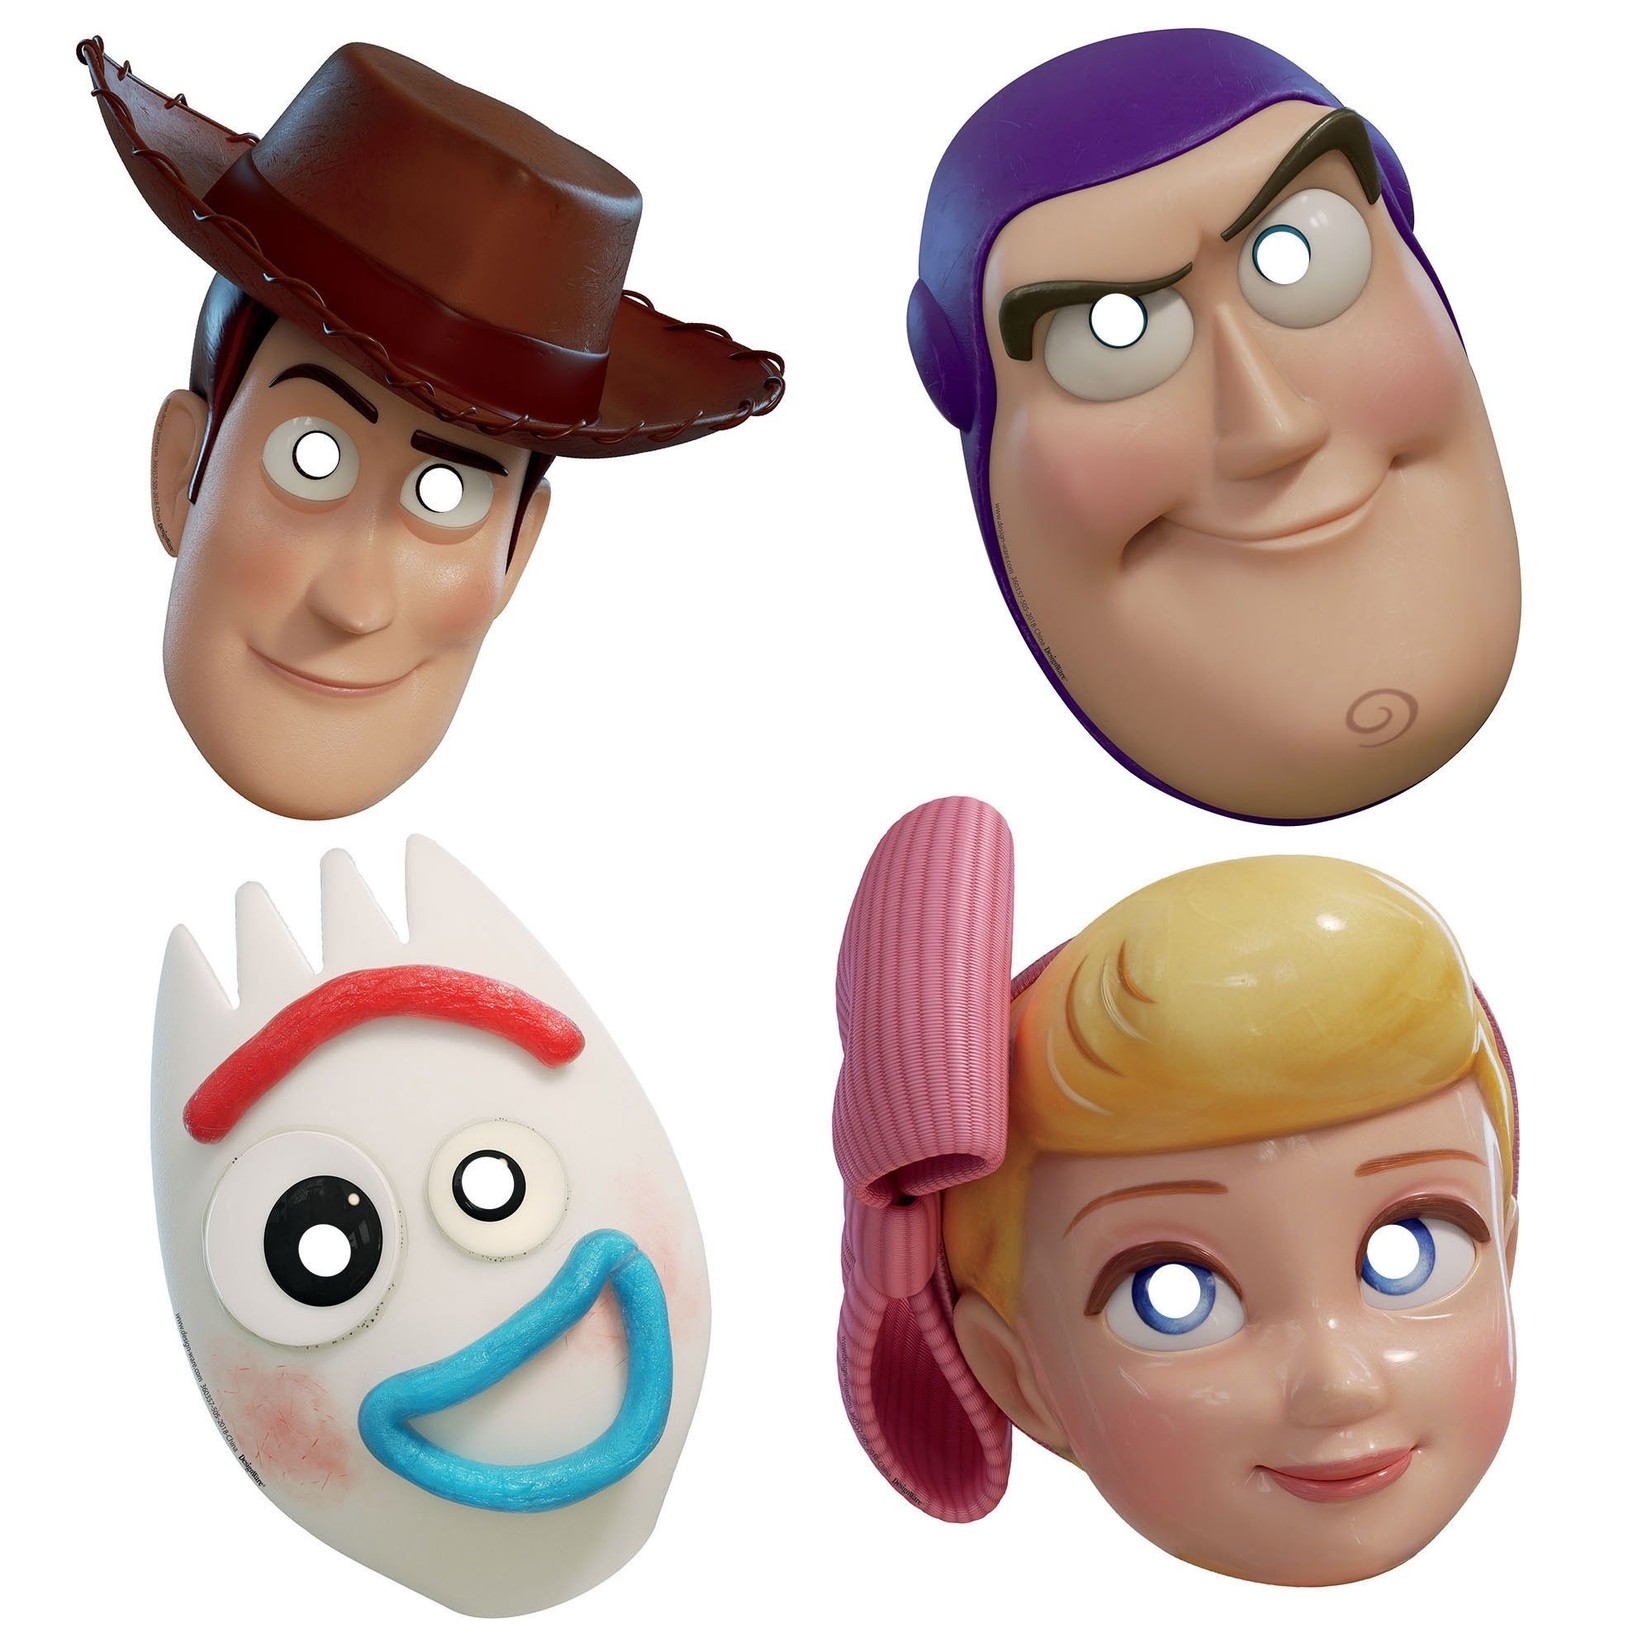 Pixar Toy Story 4 Paper Masks